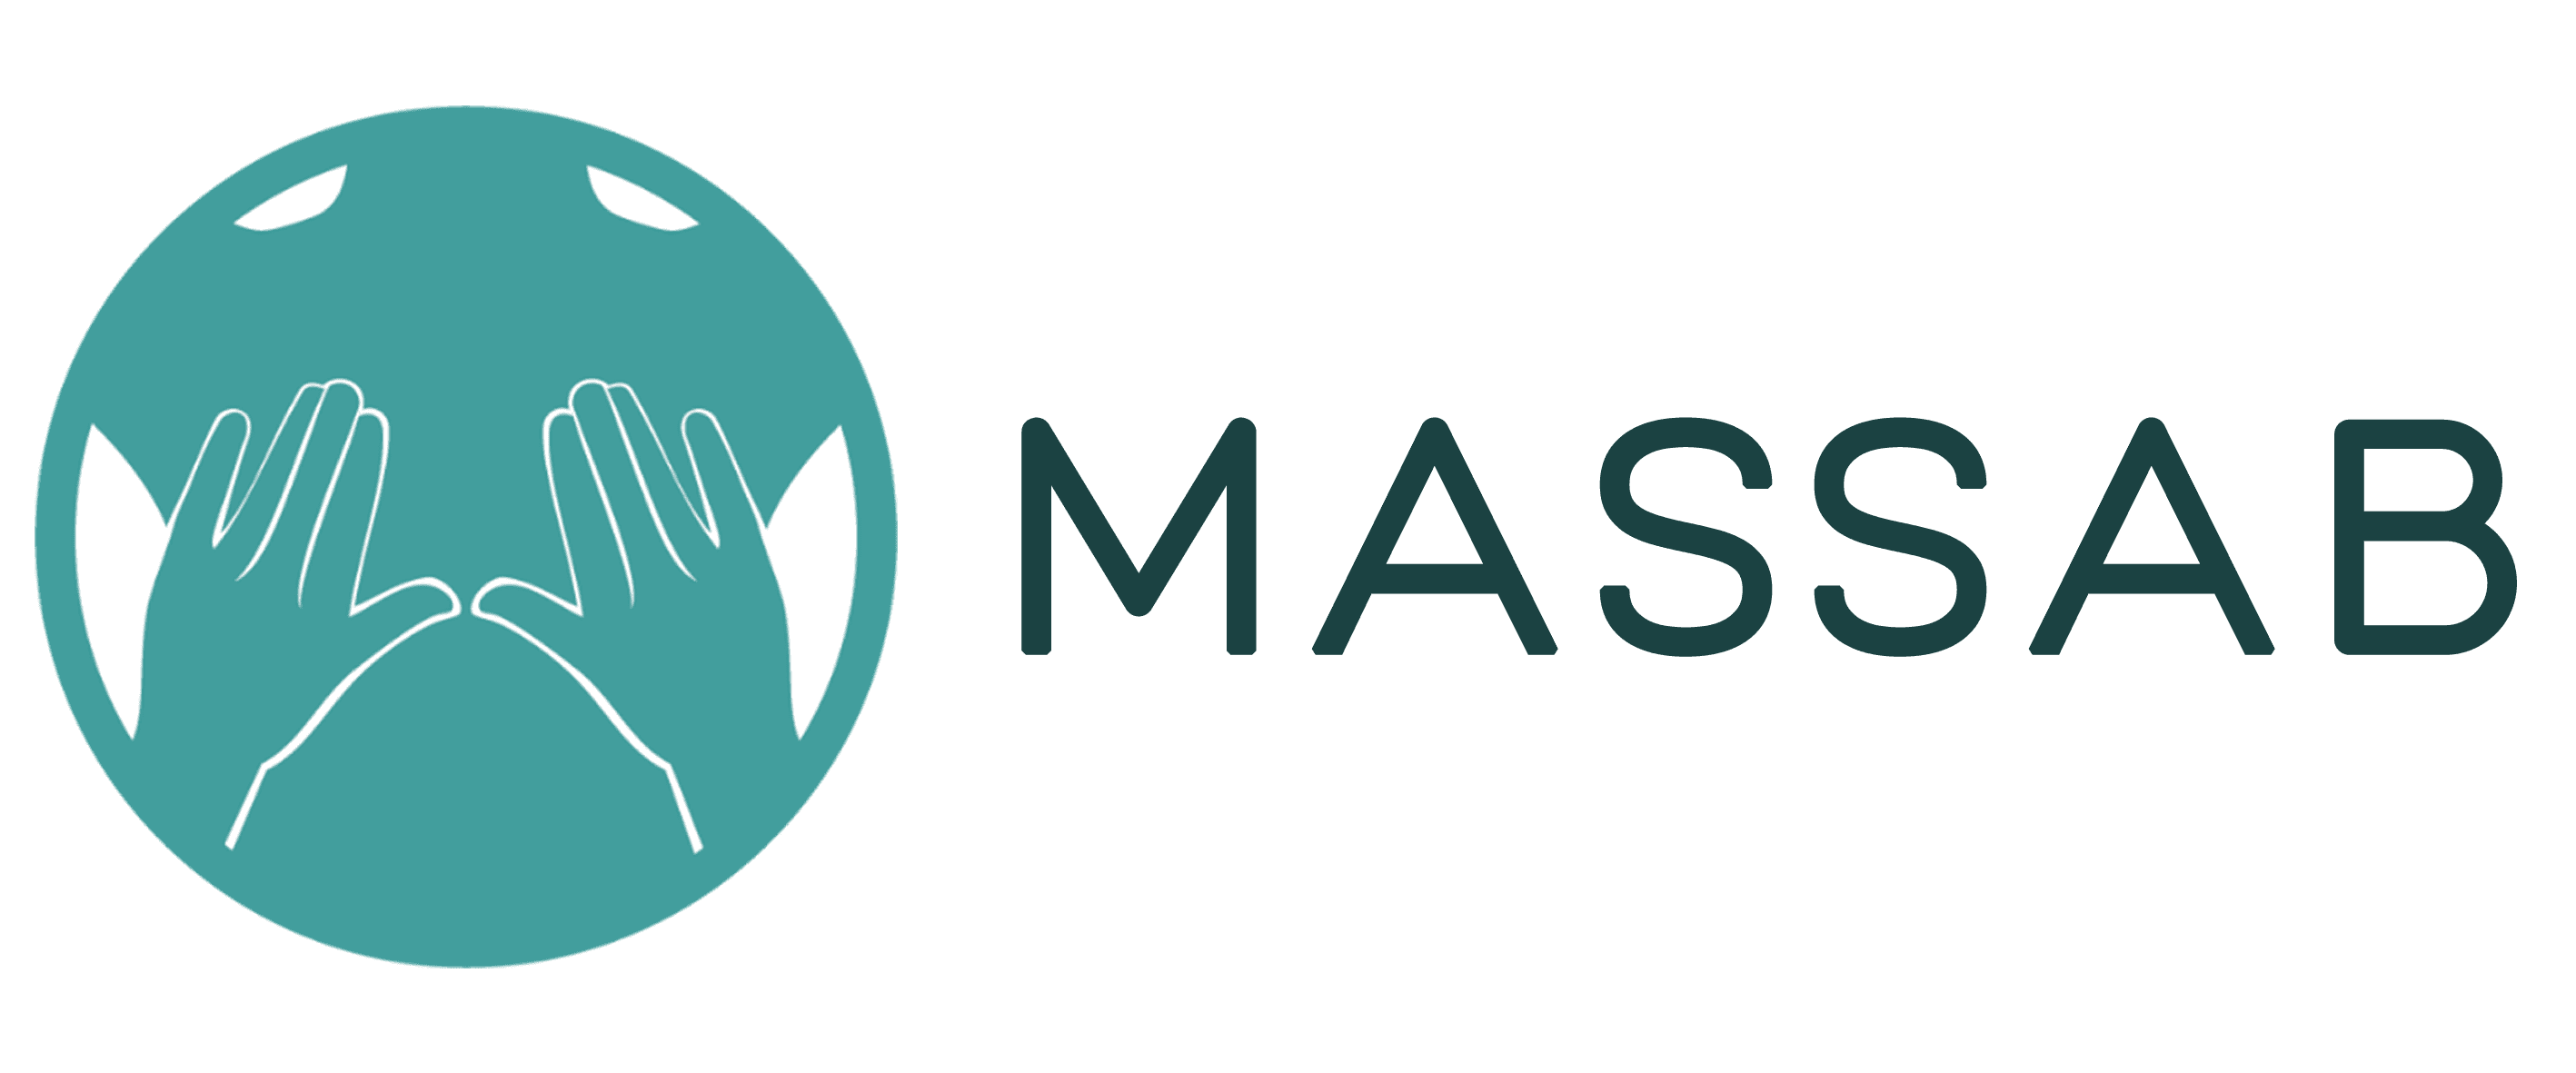 MASSAB logo con nome